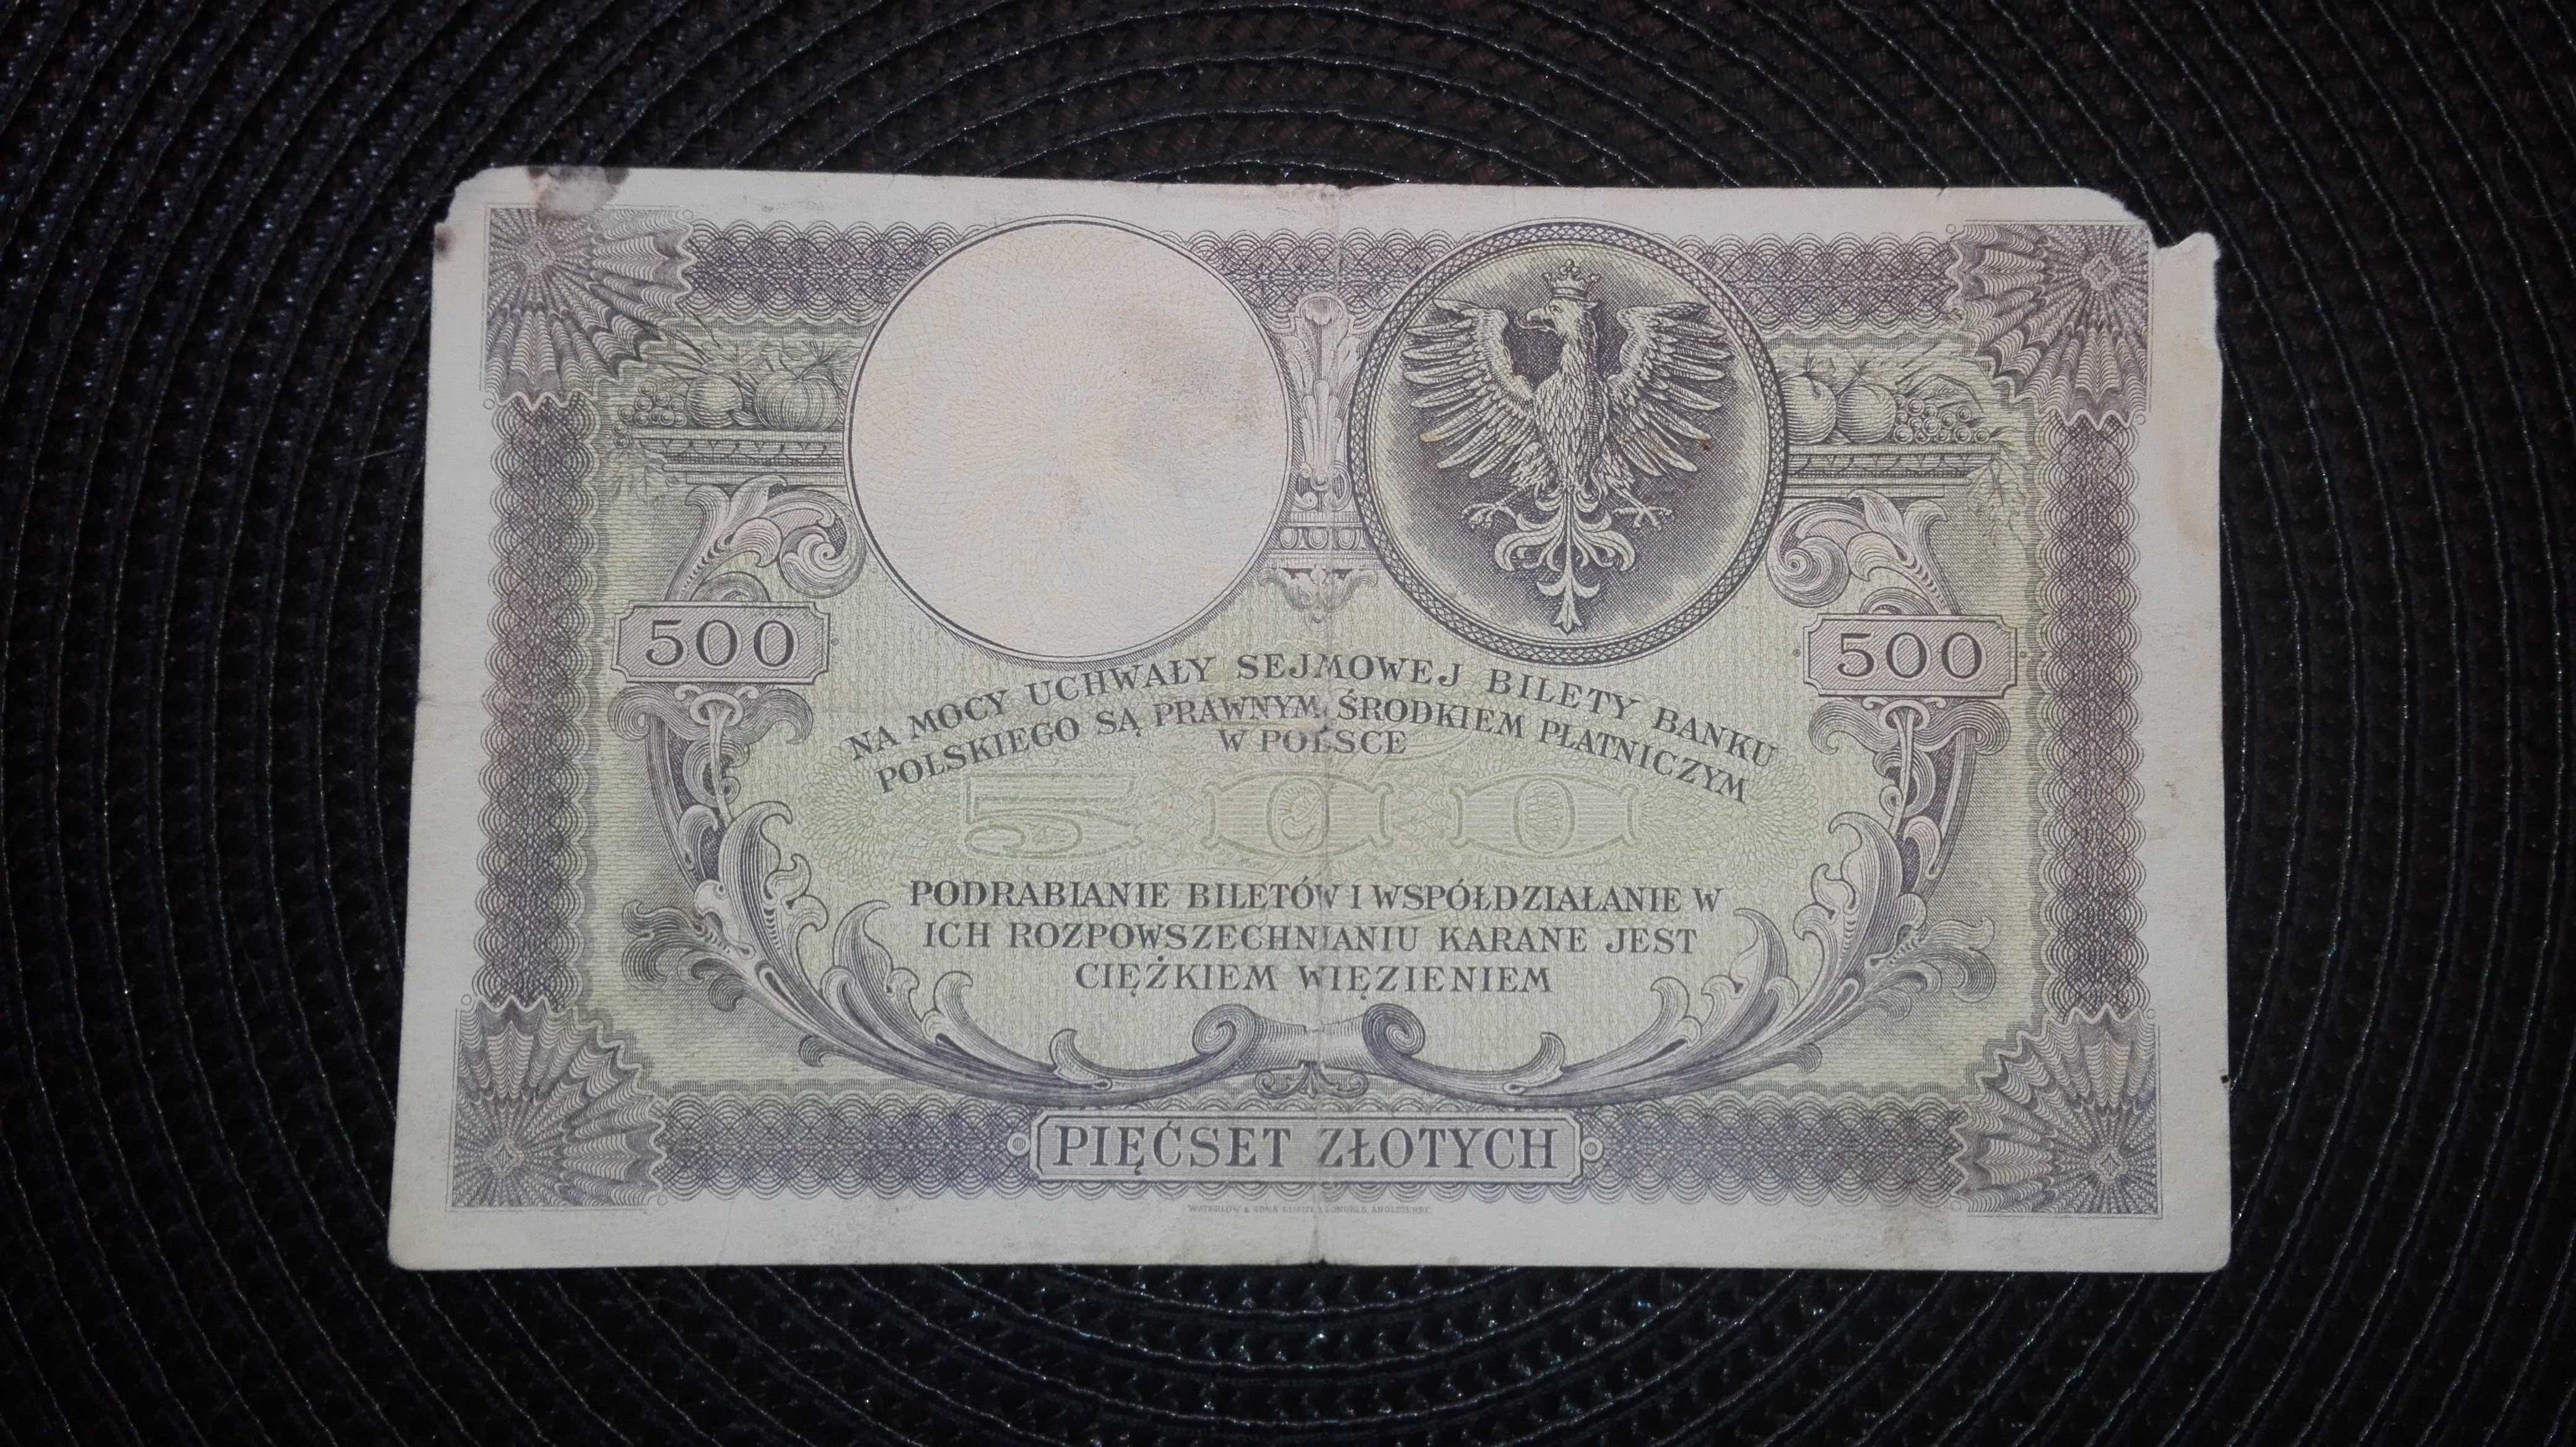 BANKNOT POLSKA  1919 Kościuszko